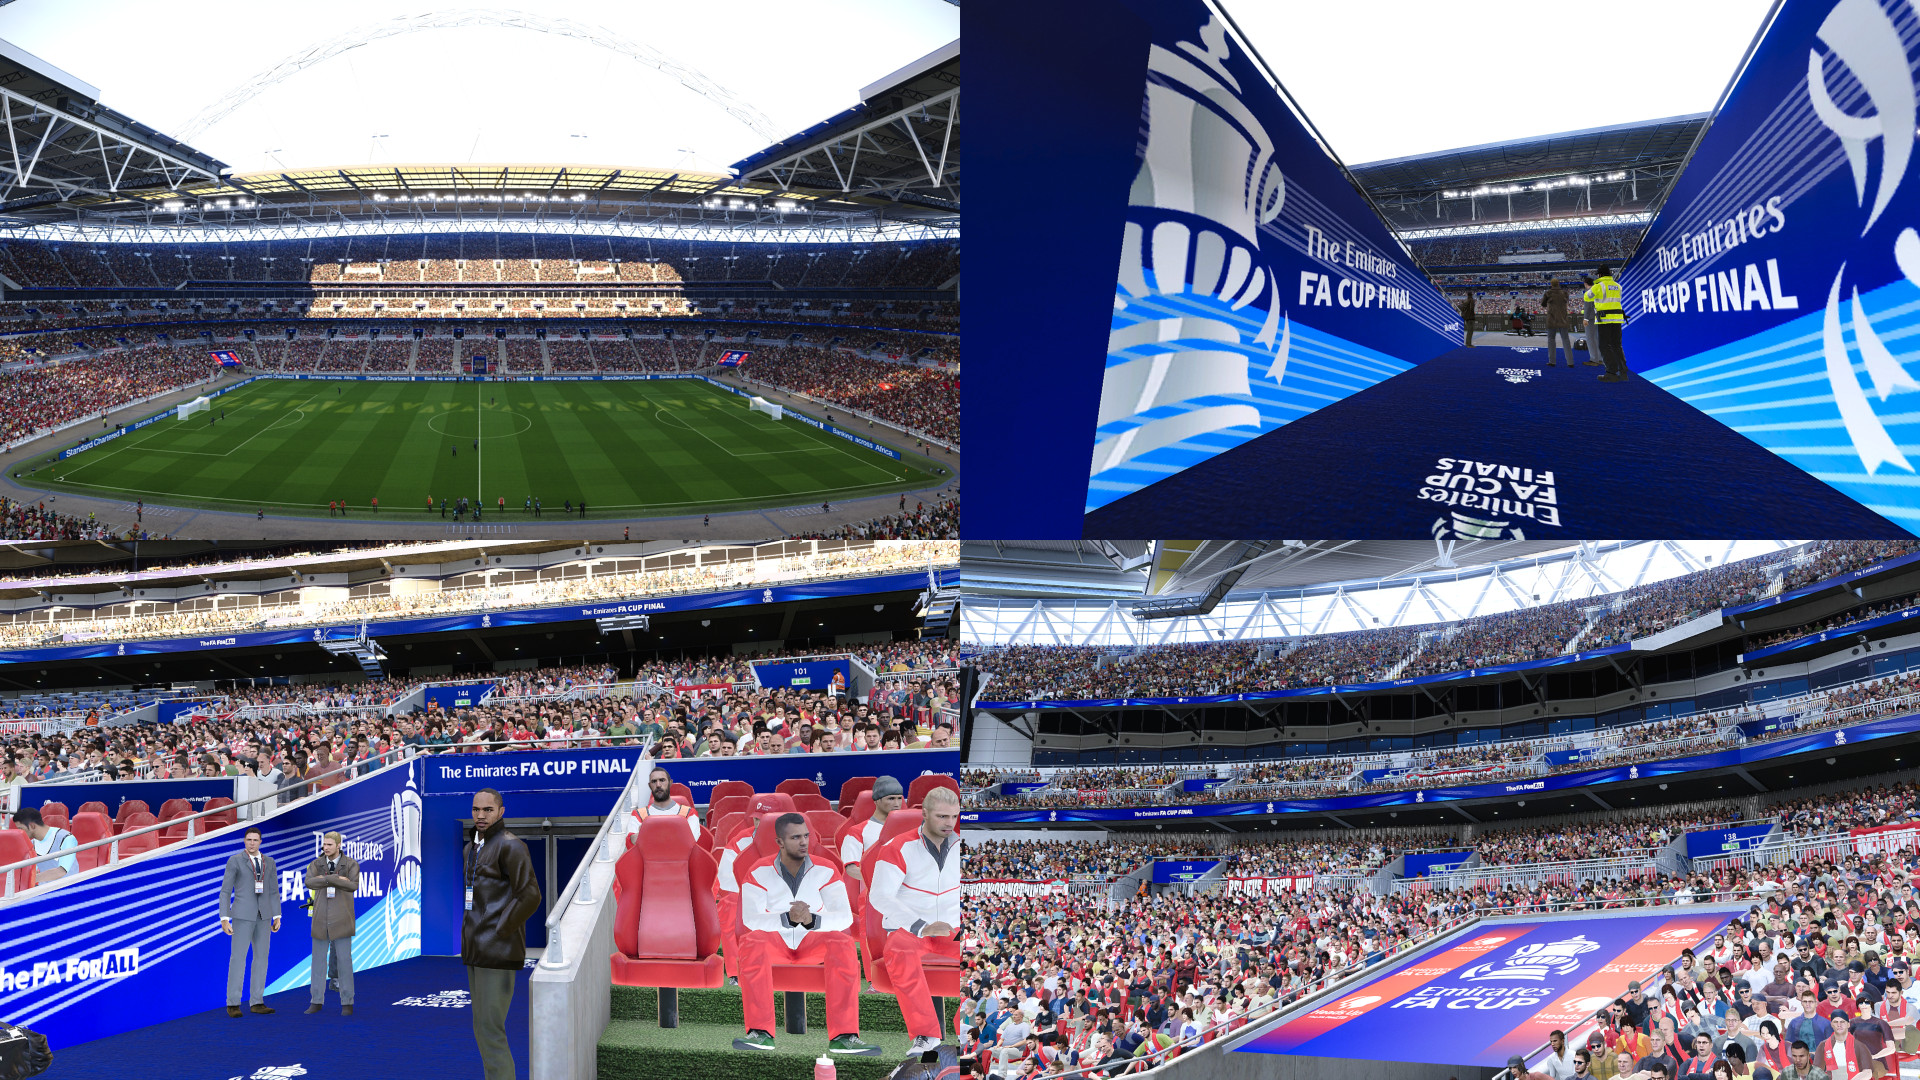 PES 2021 -2020 Wembley Stadium FA Cup Final